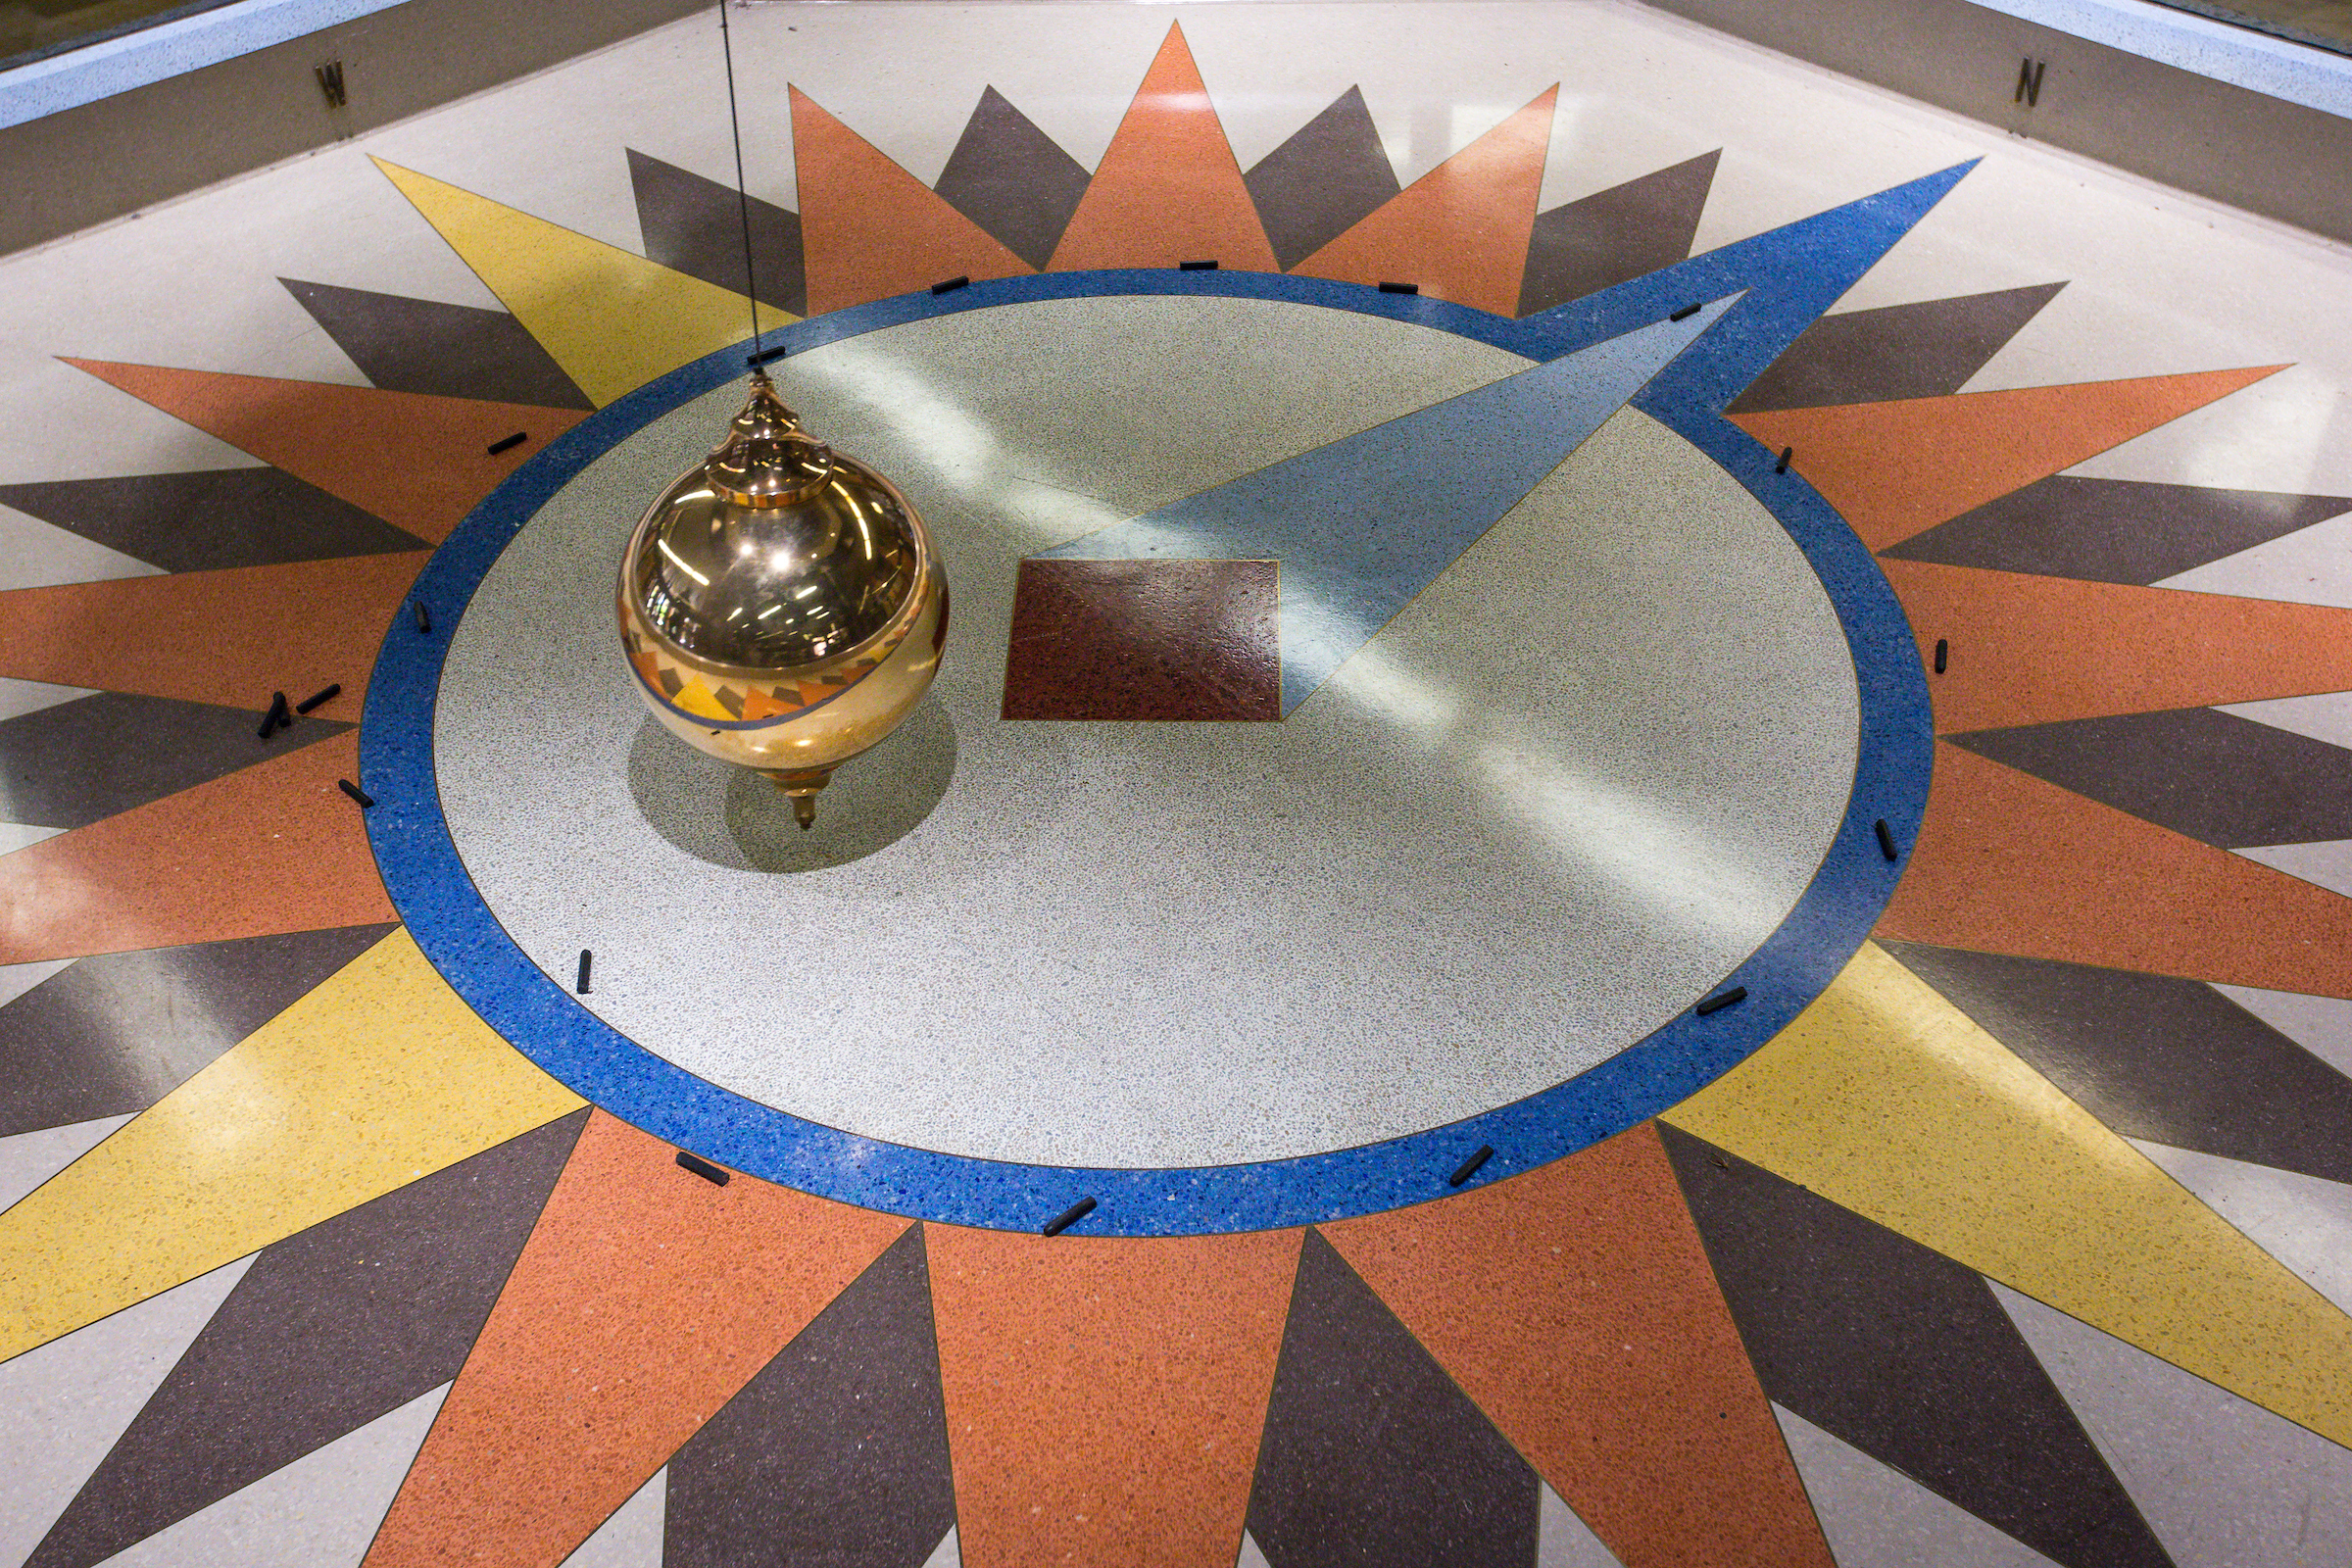 A giant pendulum moves across a floor